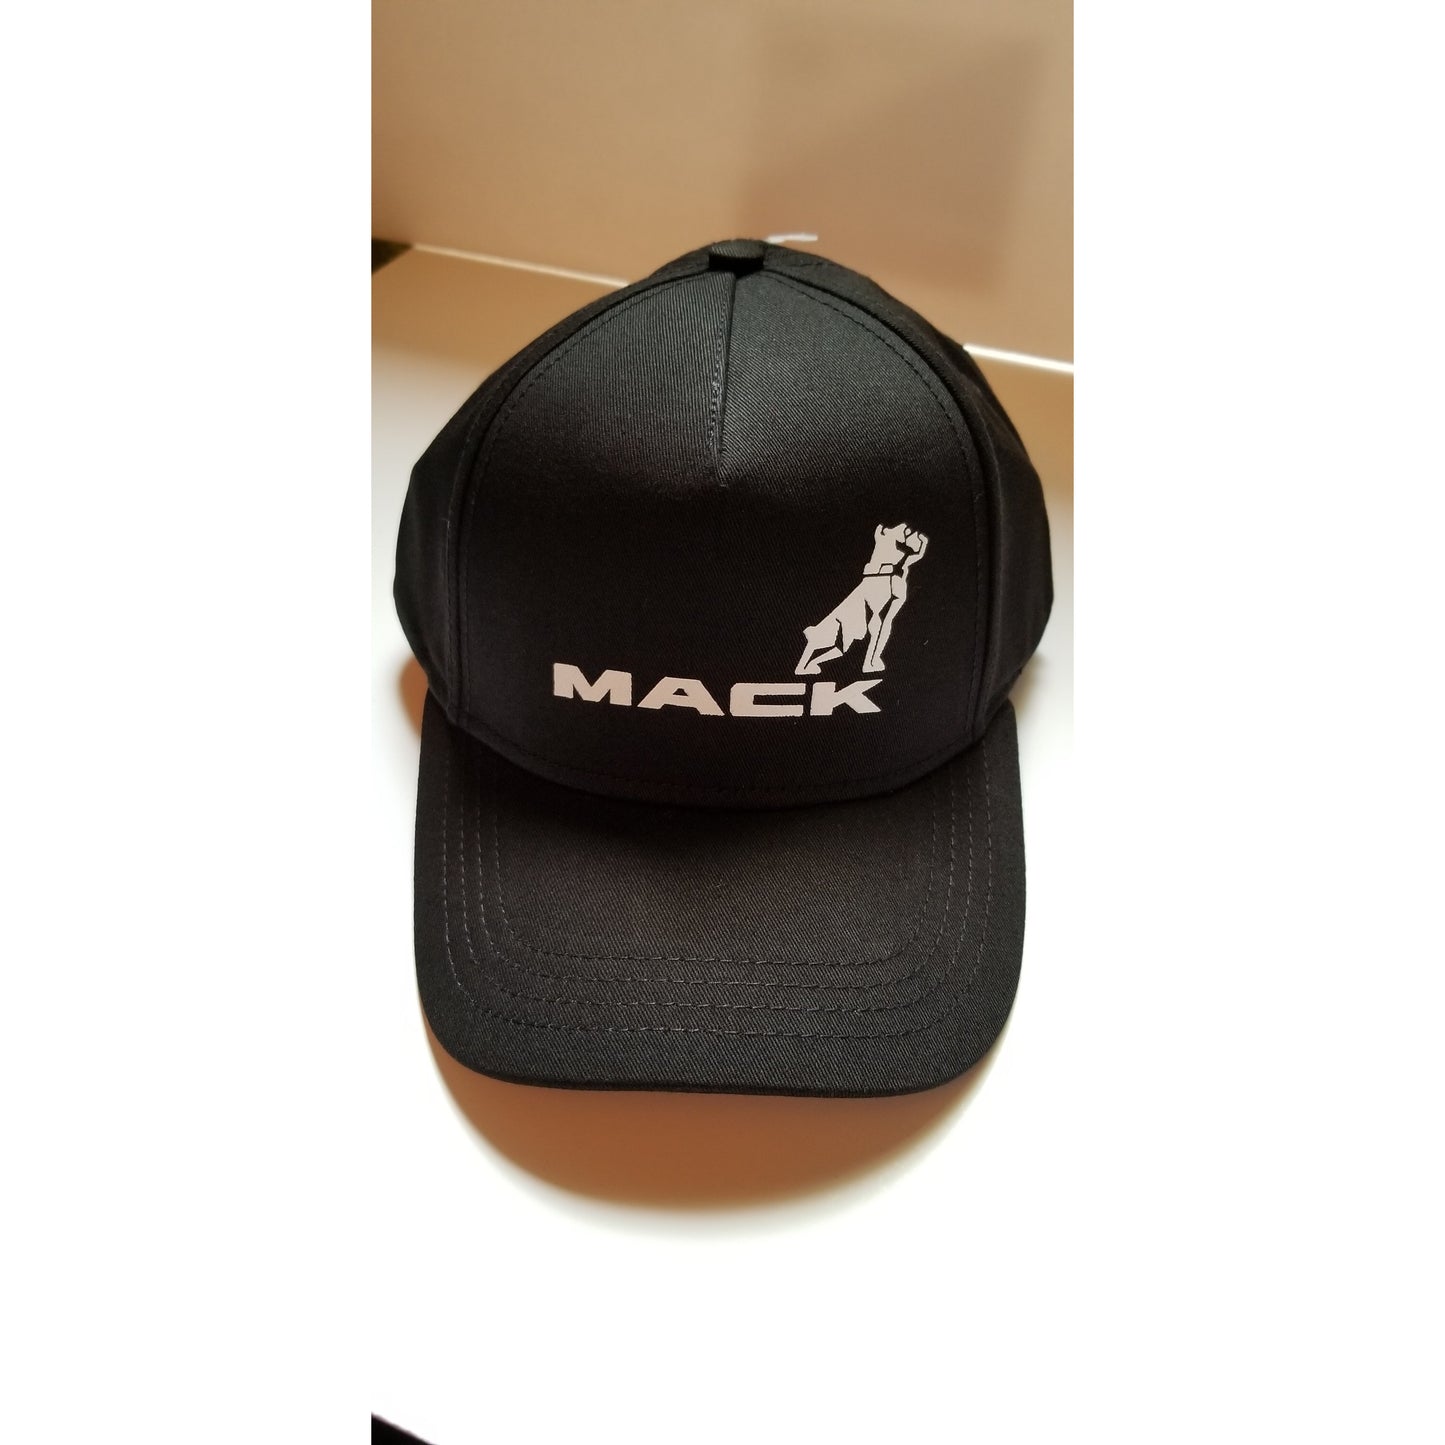 Mack Truck Baseball Cap